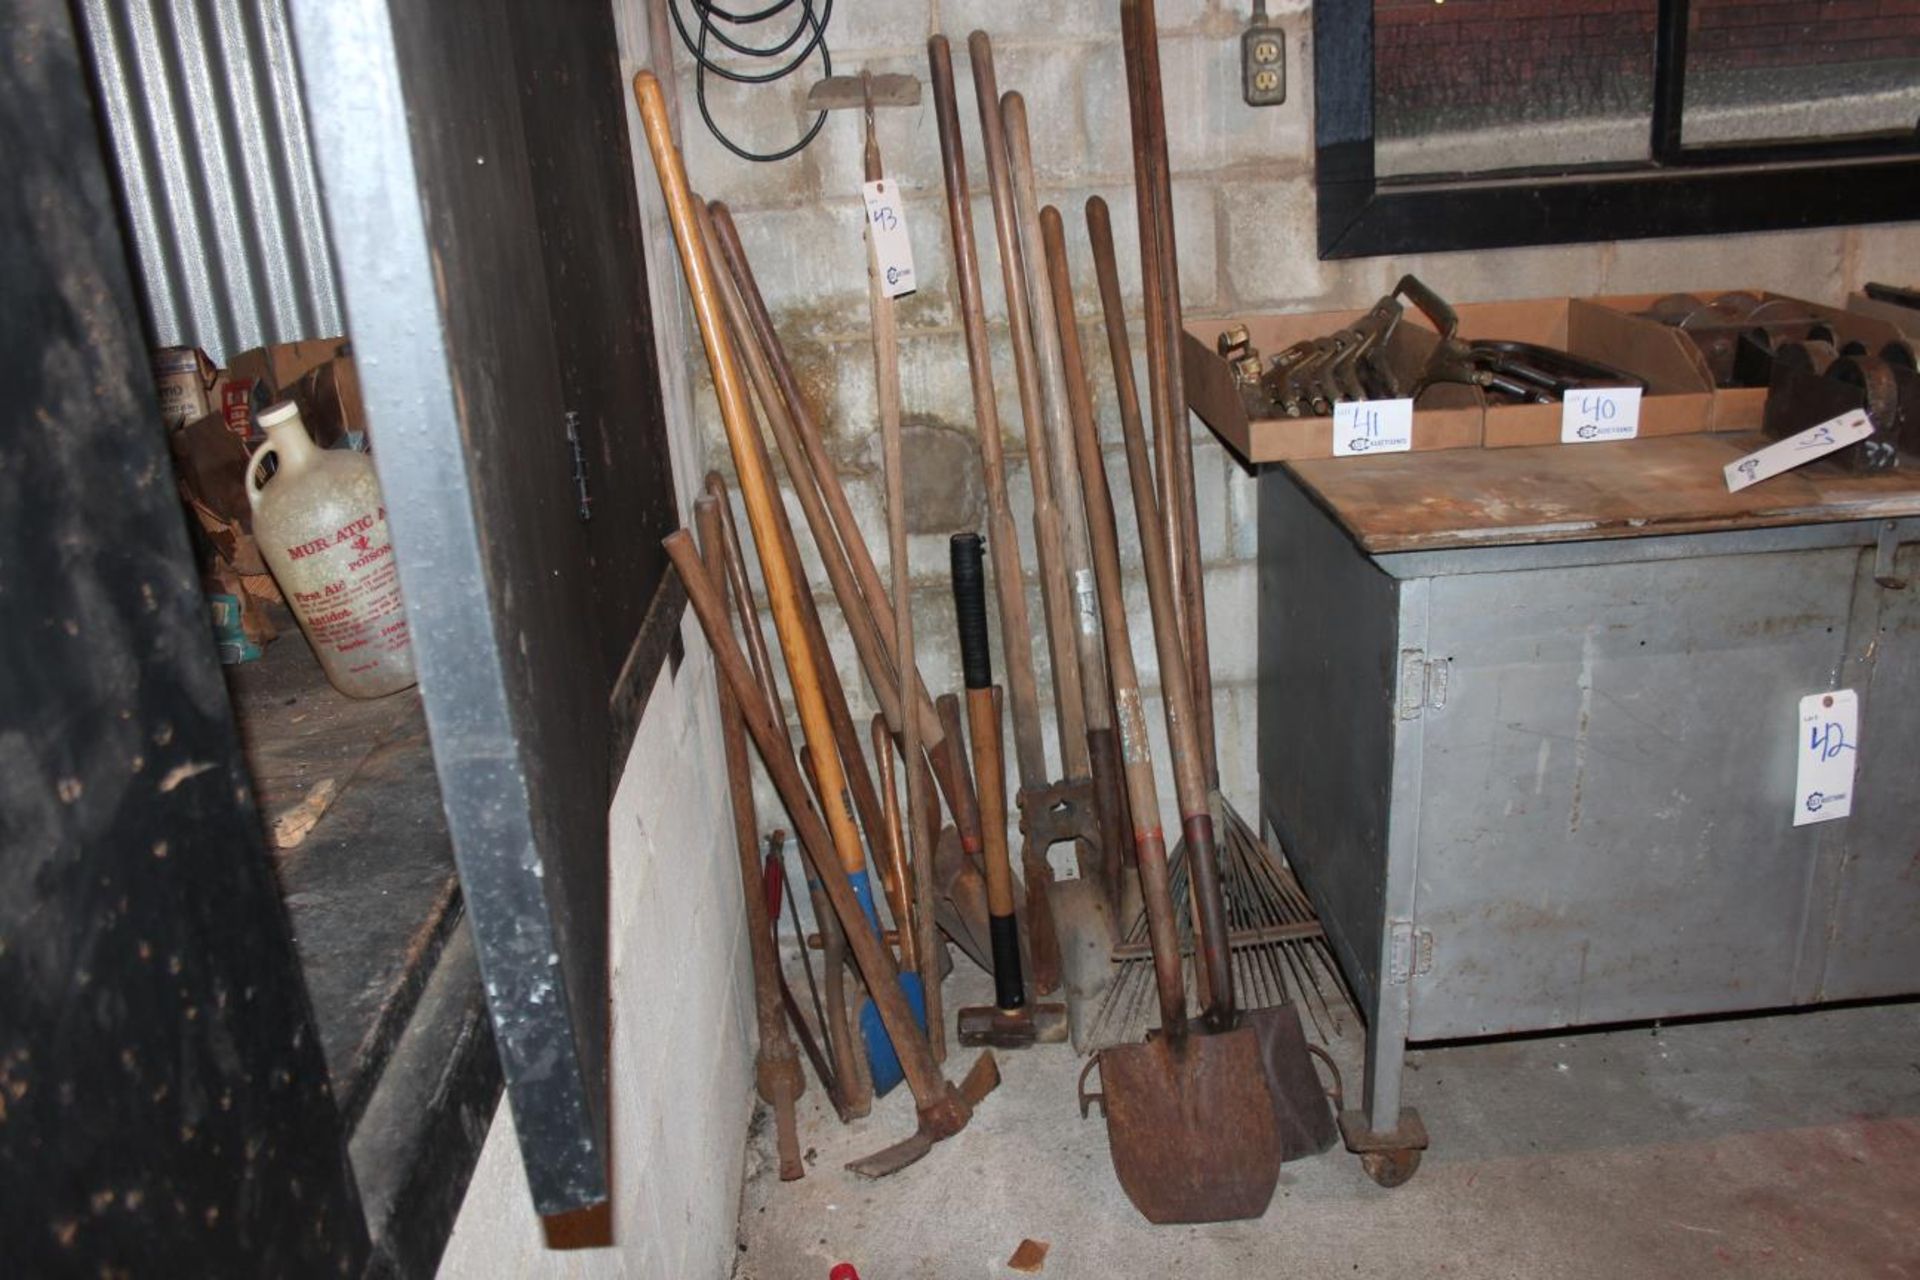 yard Tools(Shovels, Hoes, Picks, Rakes)